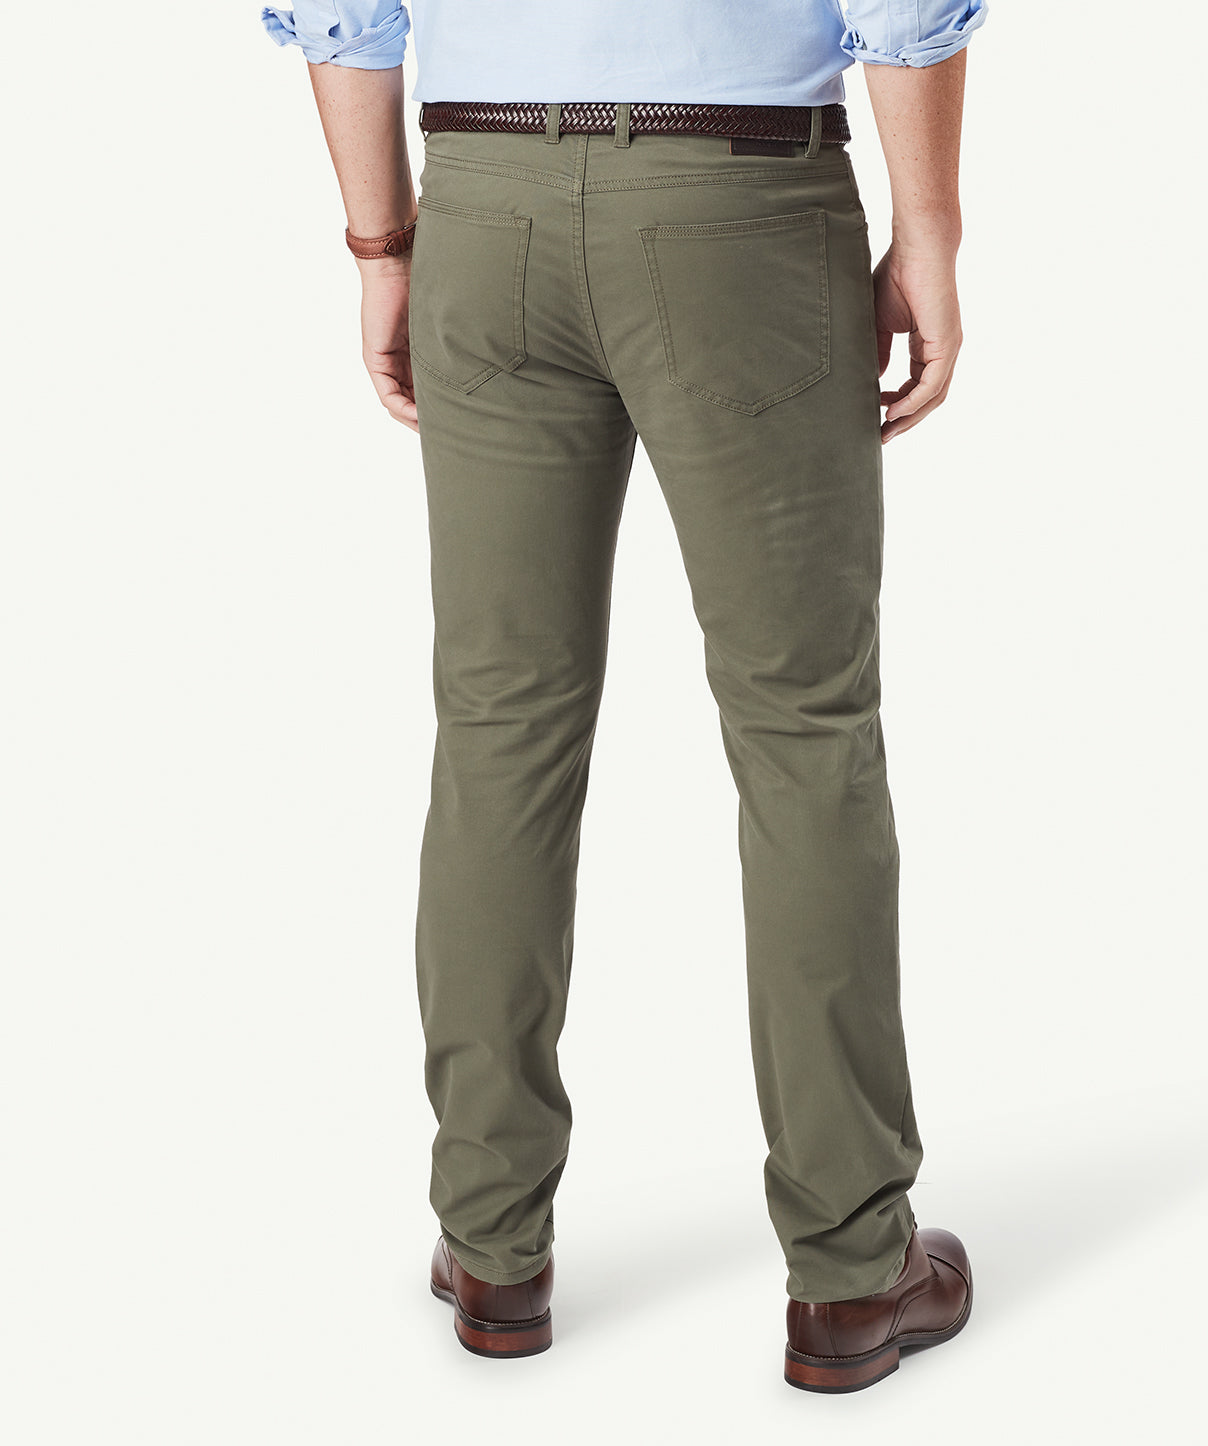 Modern Stretch 5 Pocket Pants - Army - Casual Pants - GAZMAN